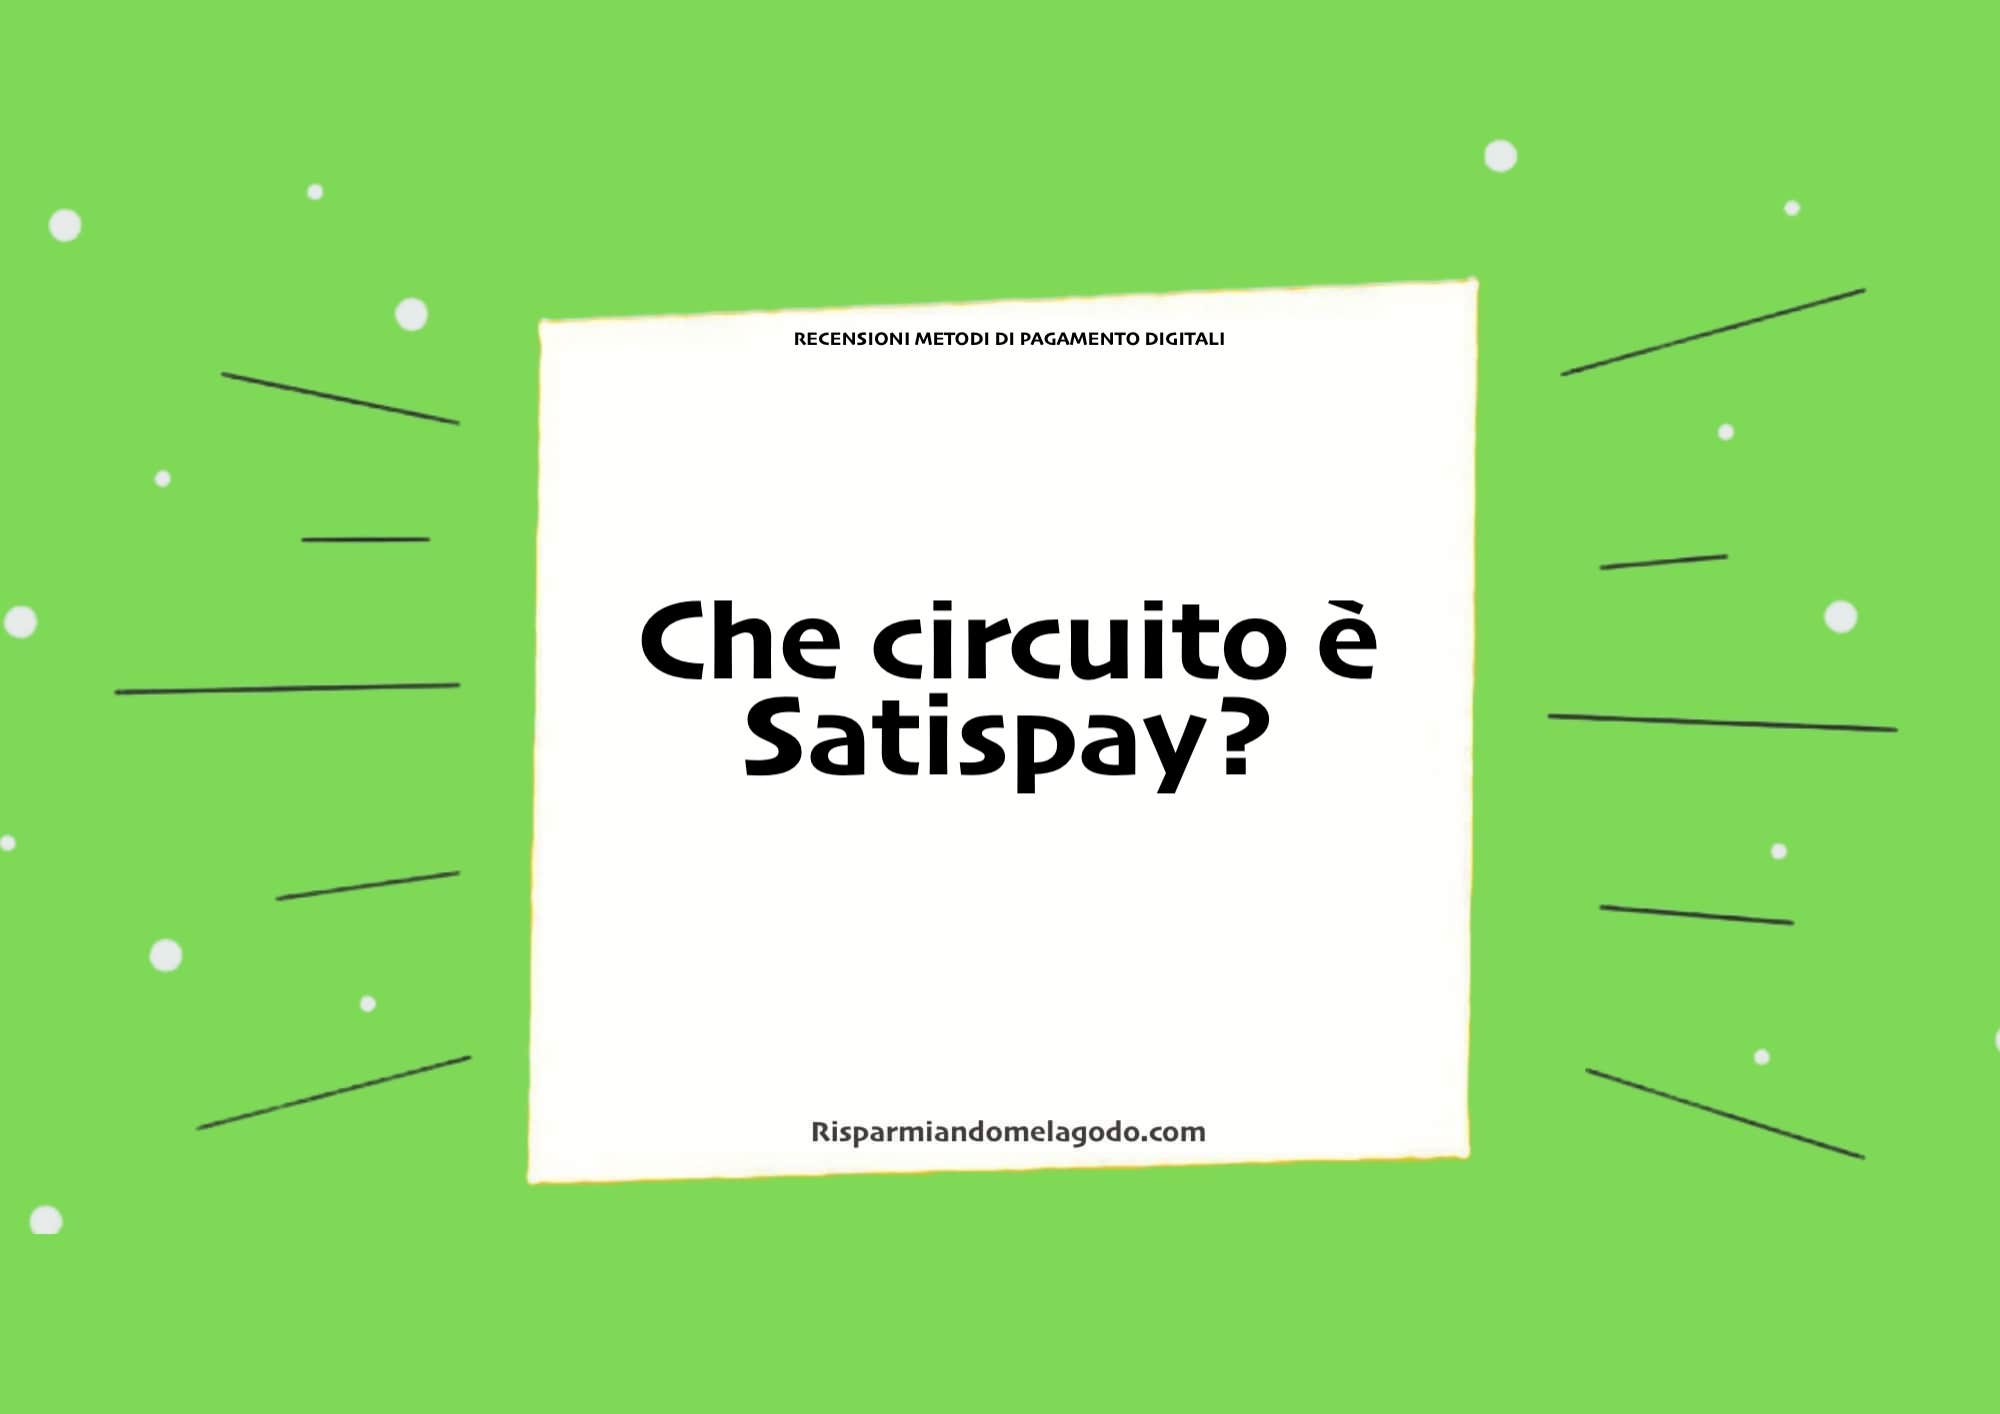 Che circuito è Satispay?